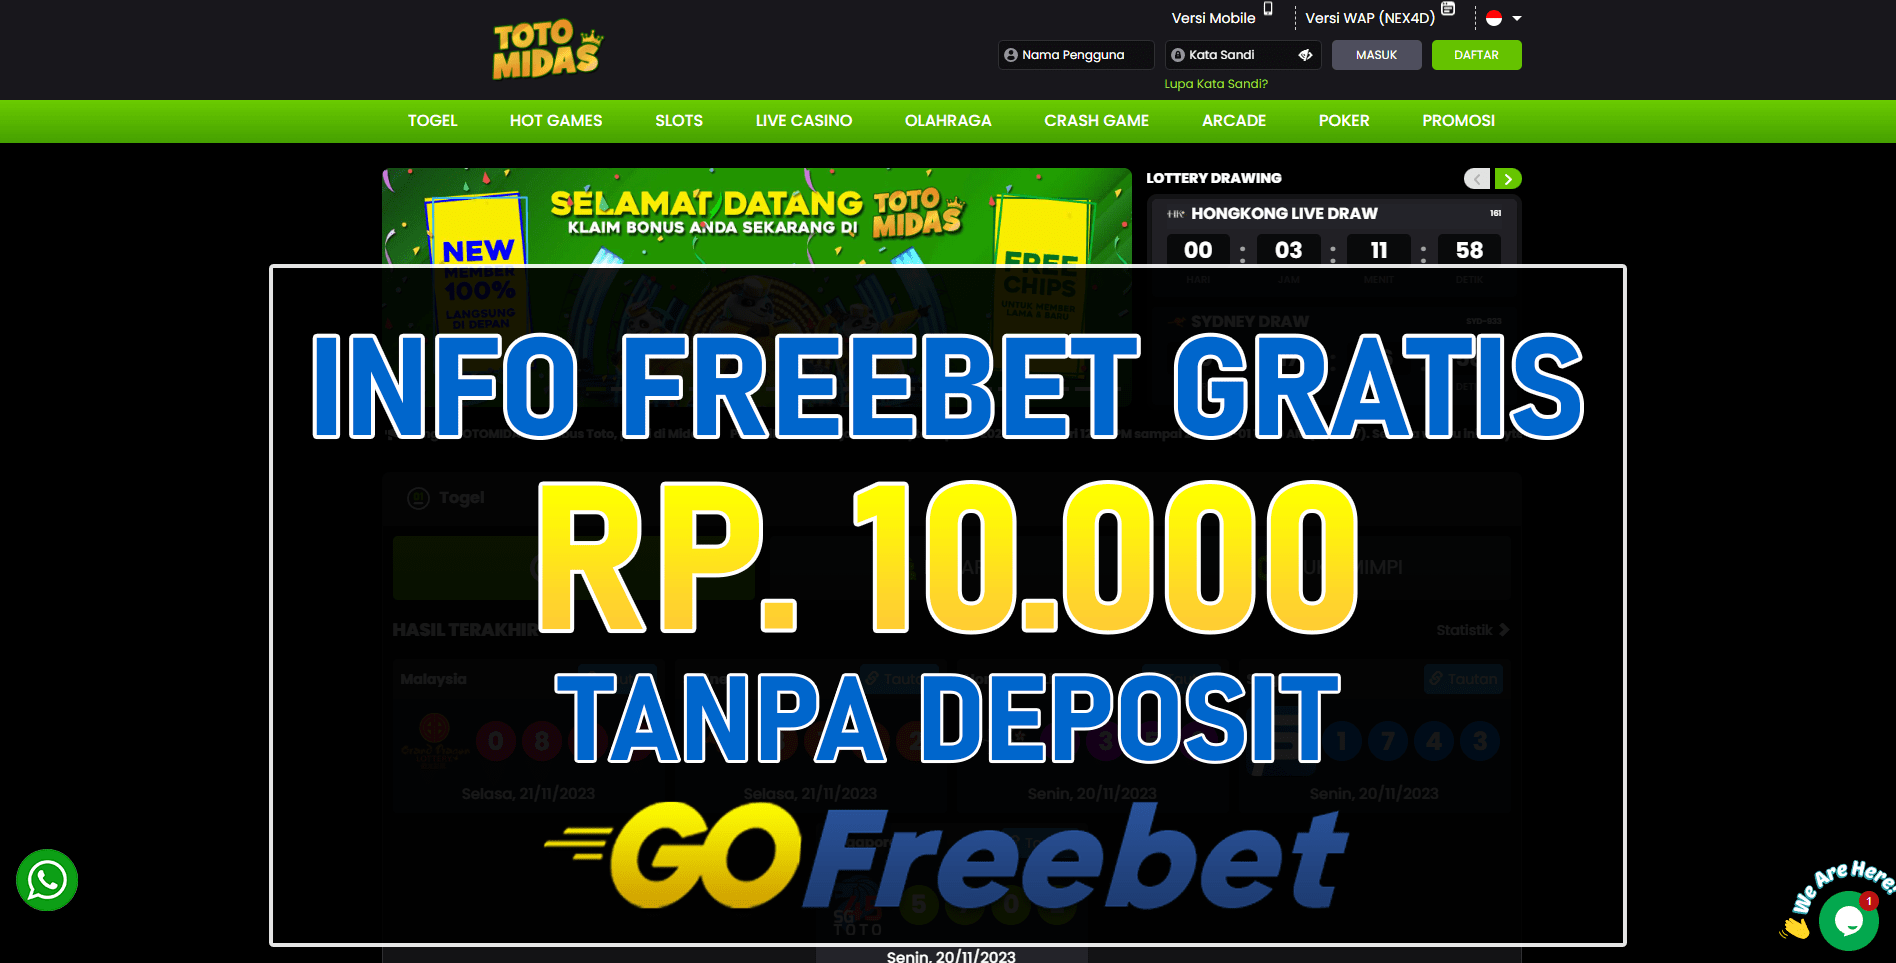 Totomidas Freebet Gratis Rp 10.000 Tanpa Deposit